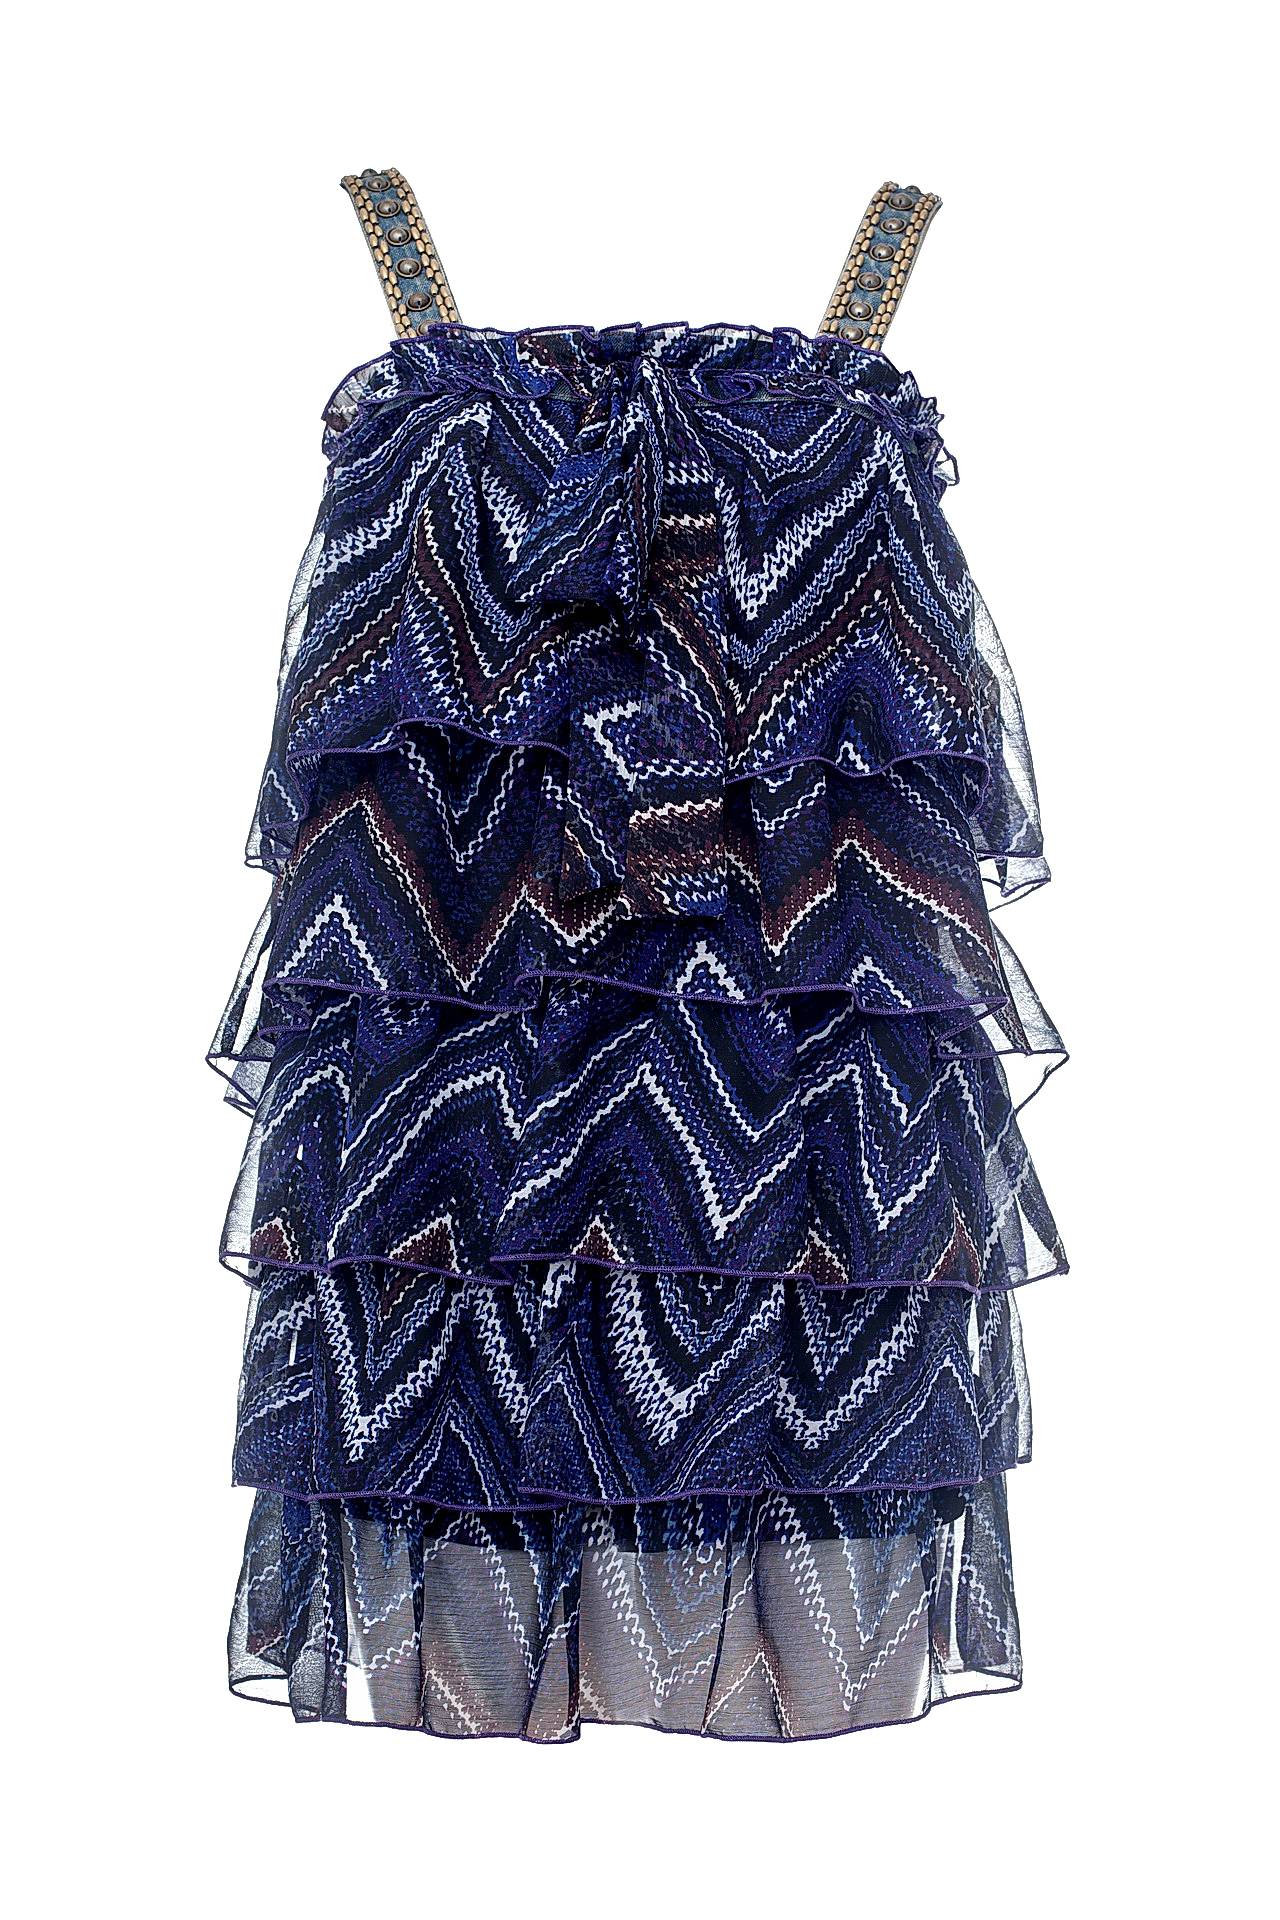 Одежда женская Туника JAUNE ROUGE (J10-041/11.1). Купить за 4750 руб.